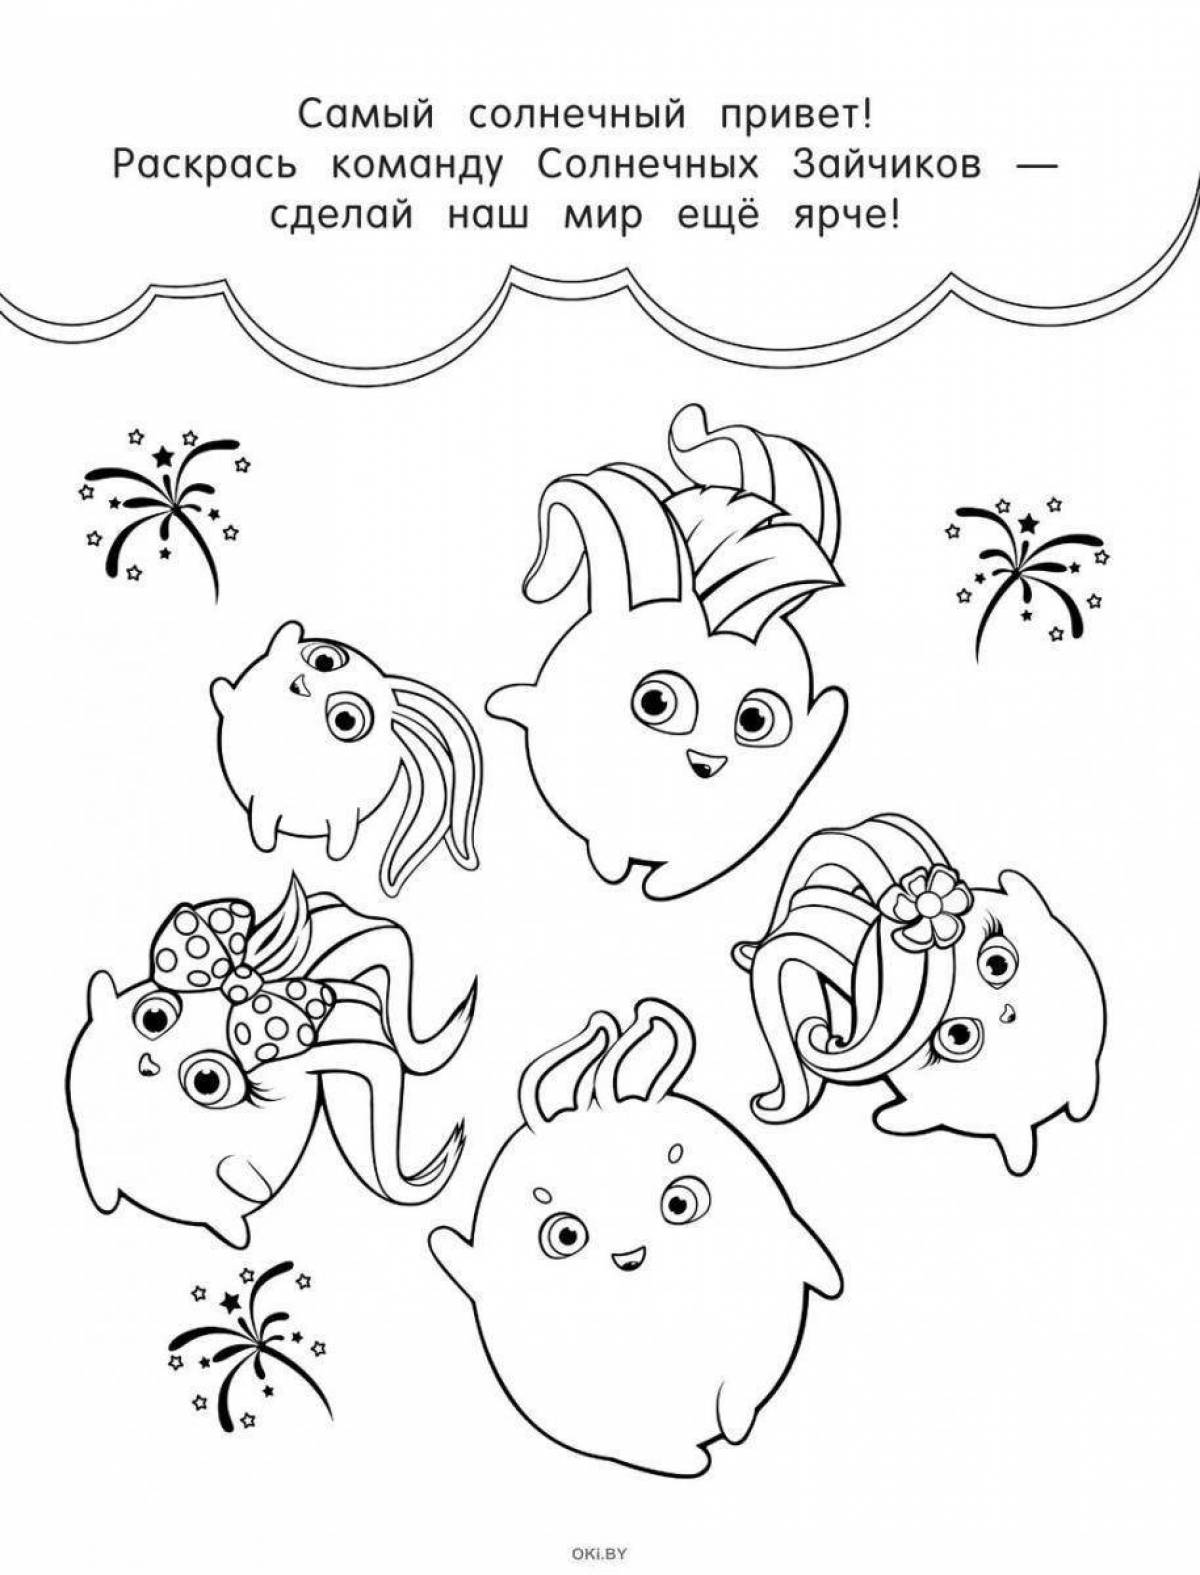 Cute sunbeams coloring book for kids